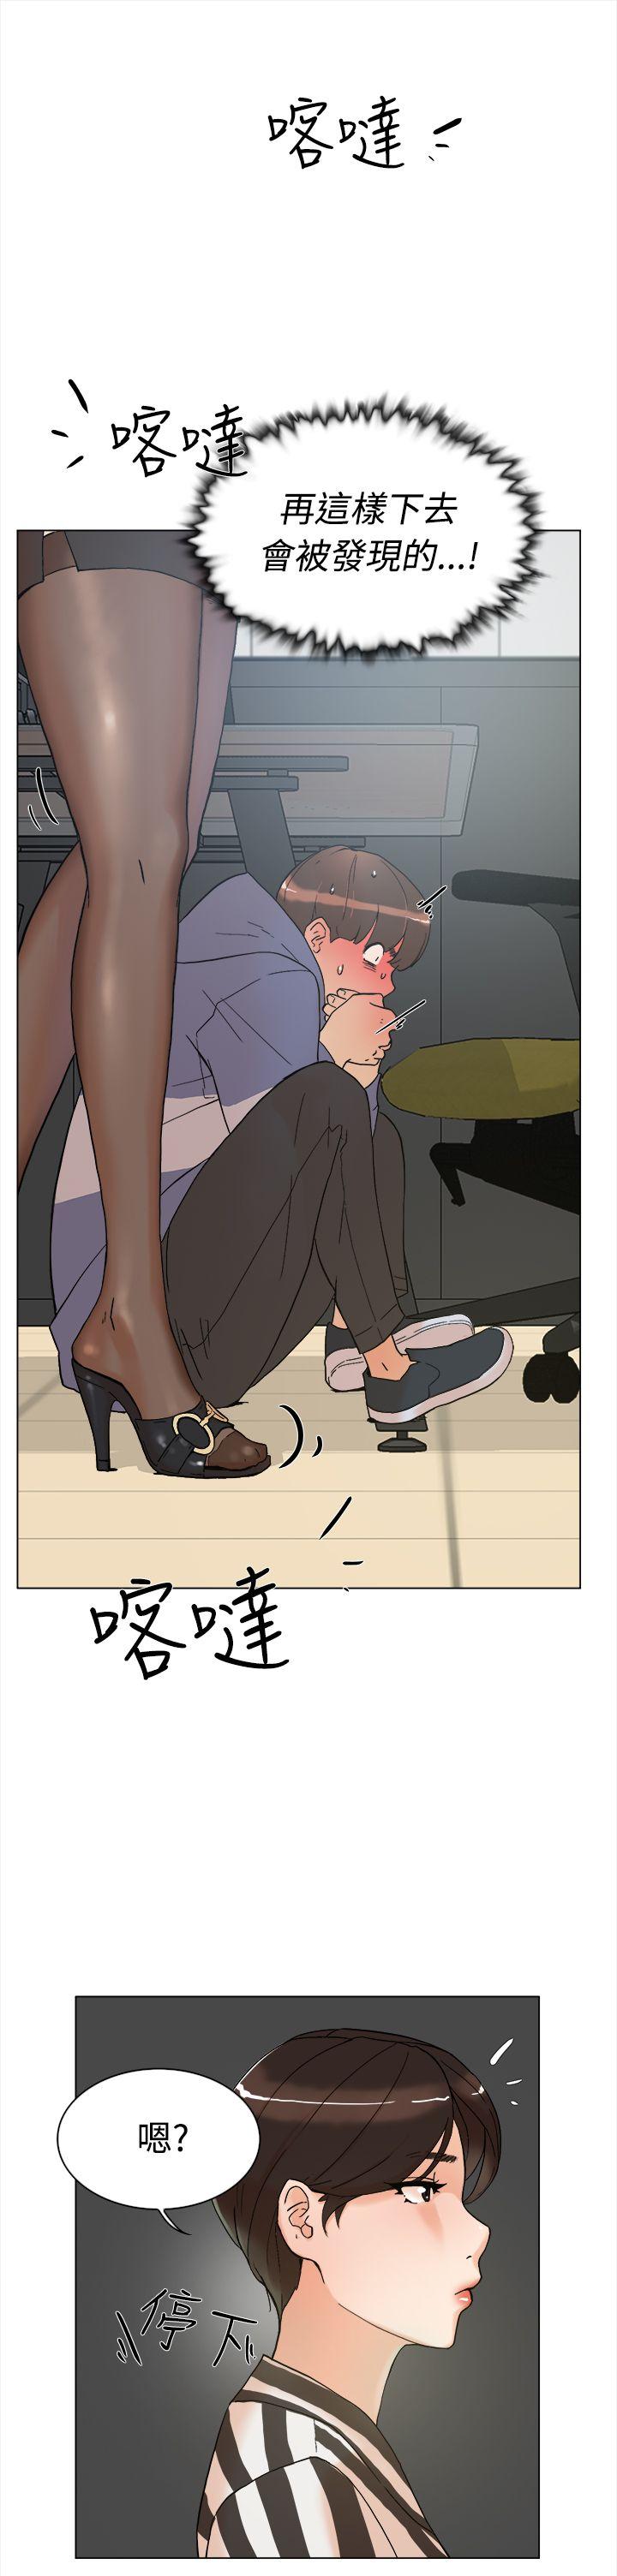 韩国污漫画 她的高跟鞋(無刪減) 第2话 42